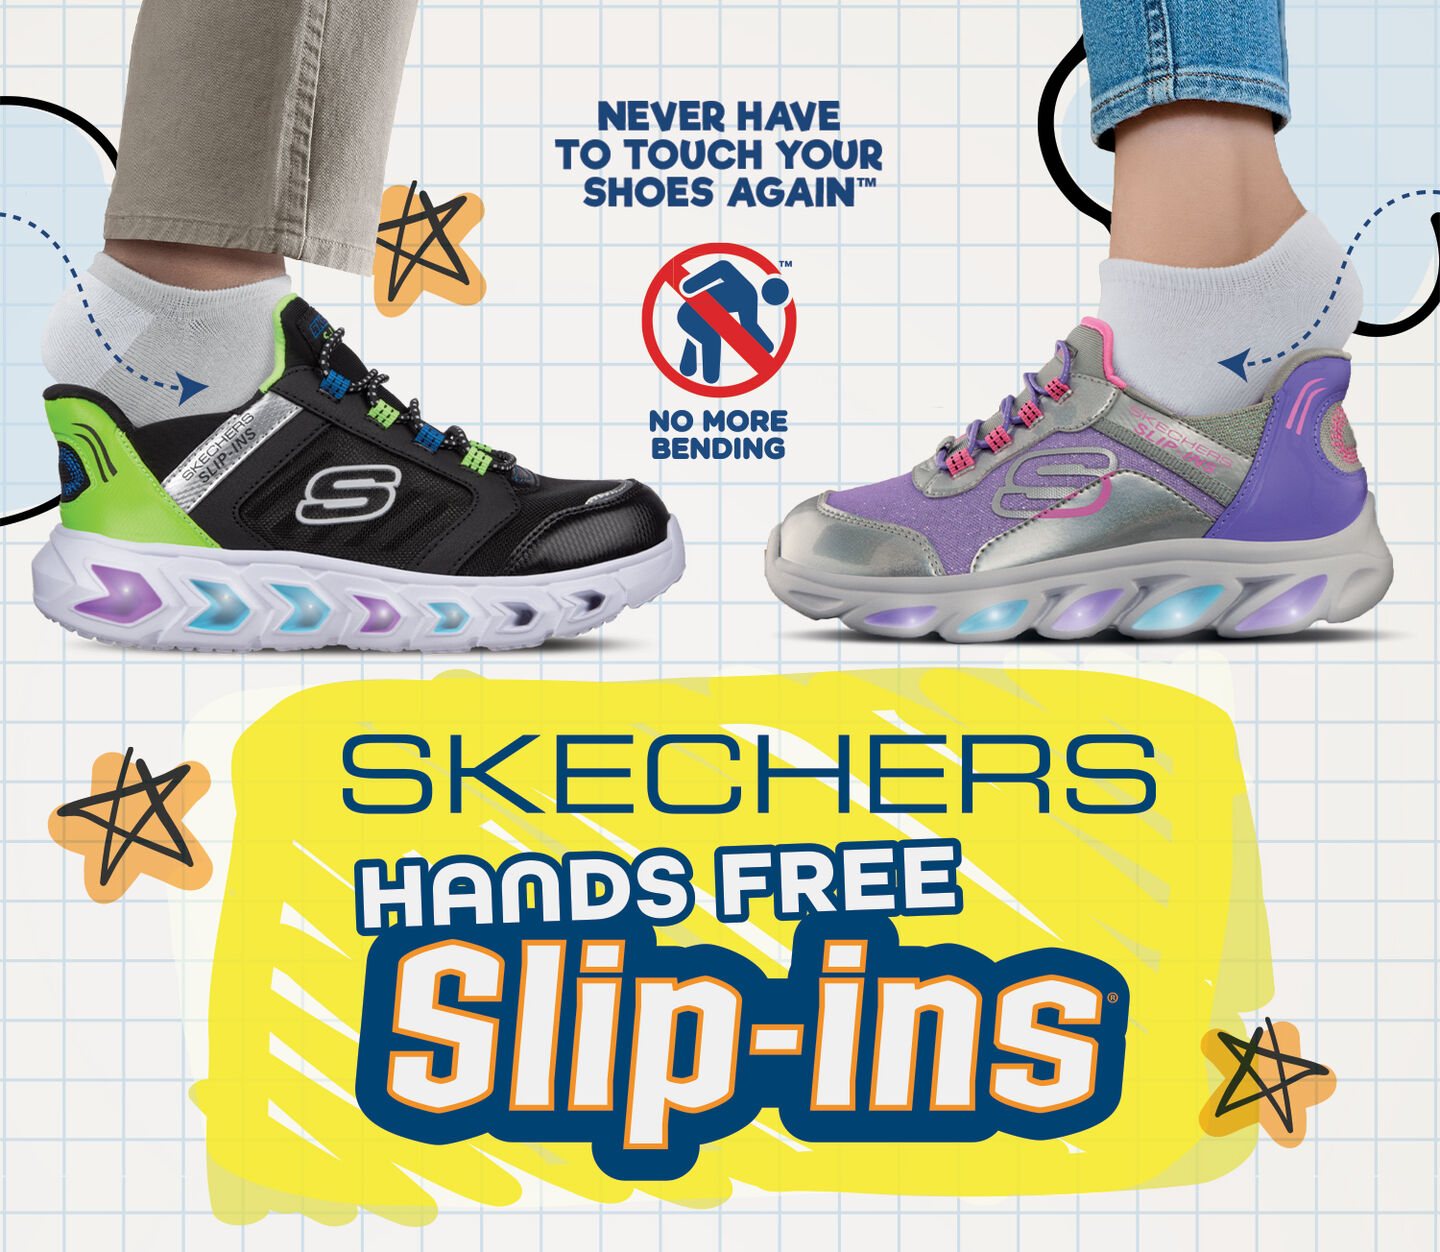 Skechers Kids